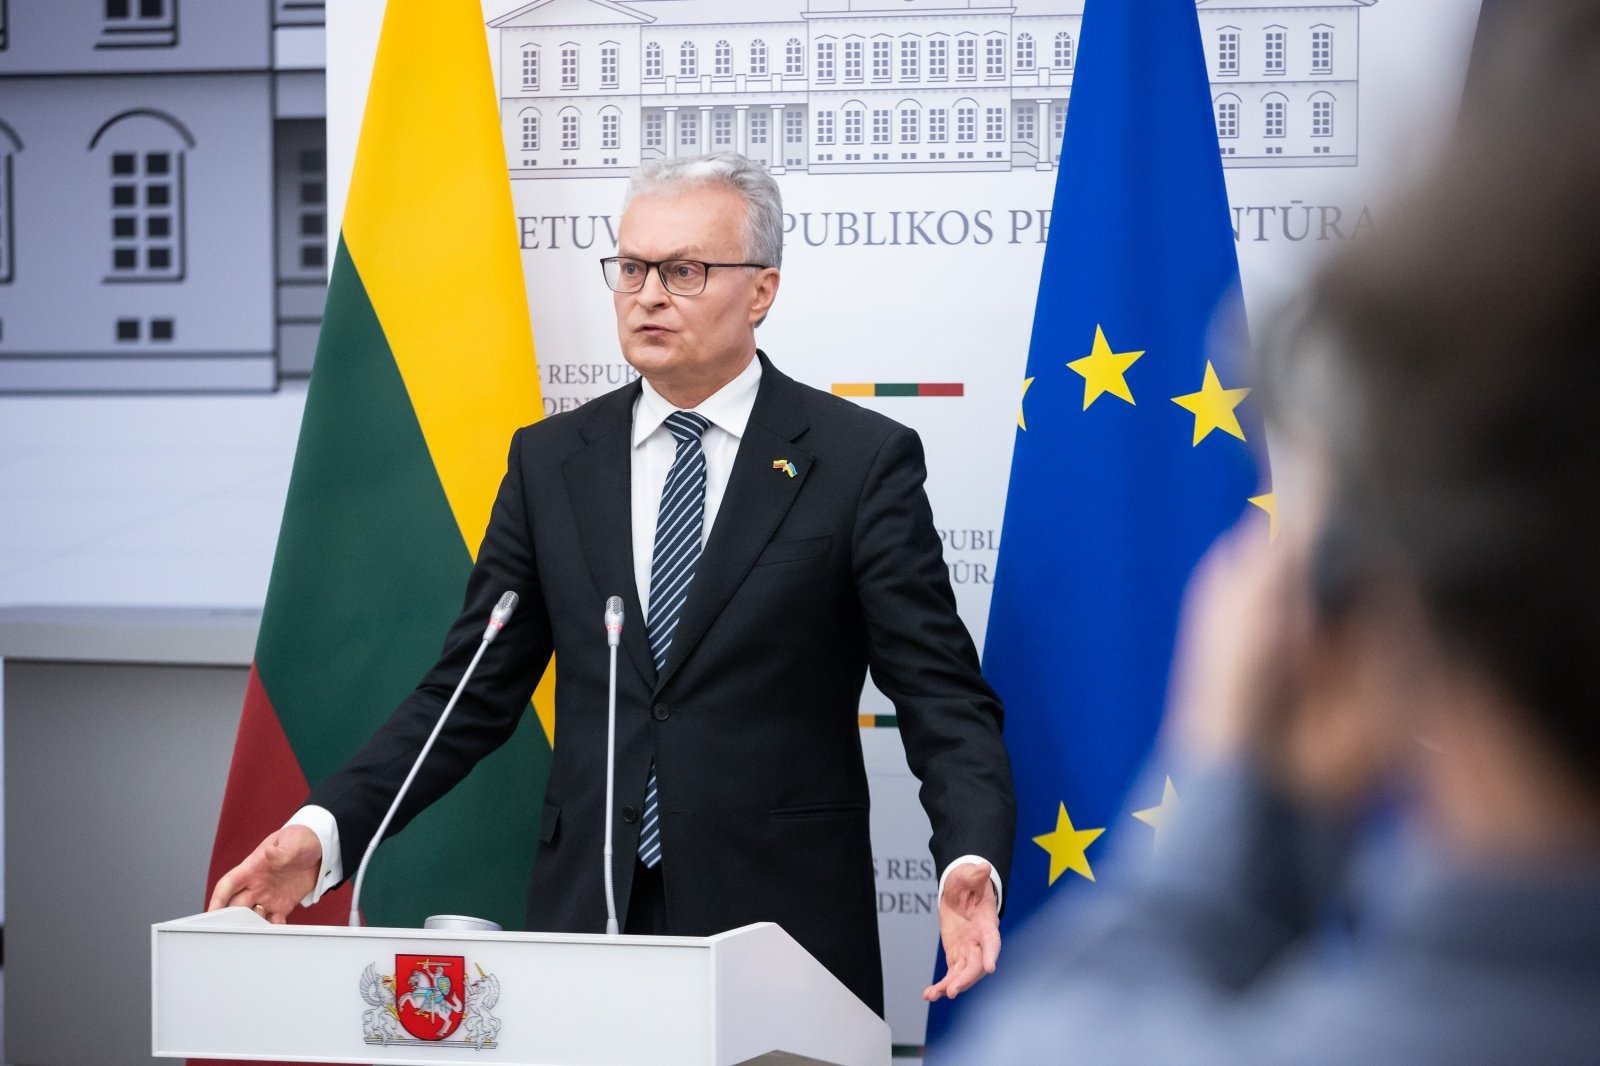 Nausėda: Kraje bałtyckie, Polska może być alternatywą dla ukraińskiego zboża